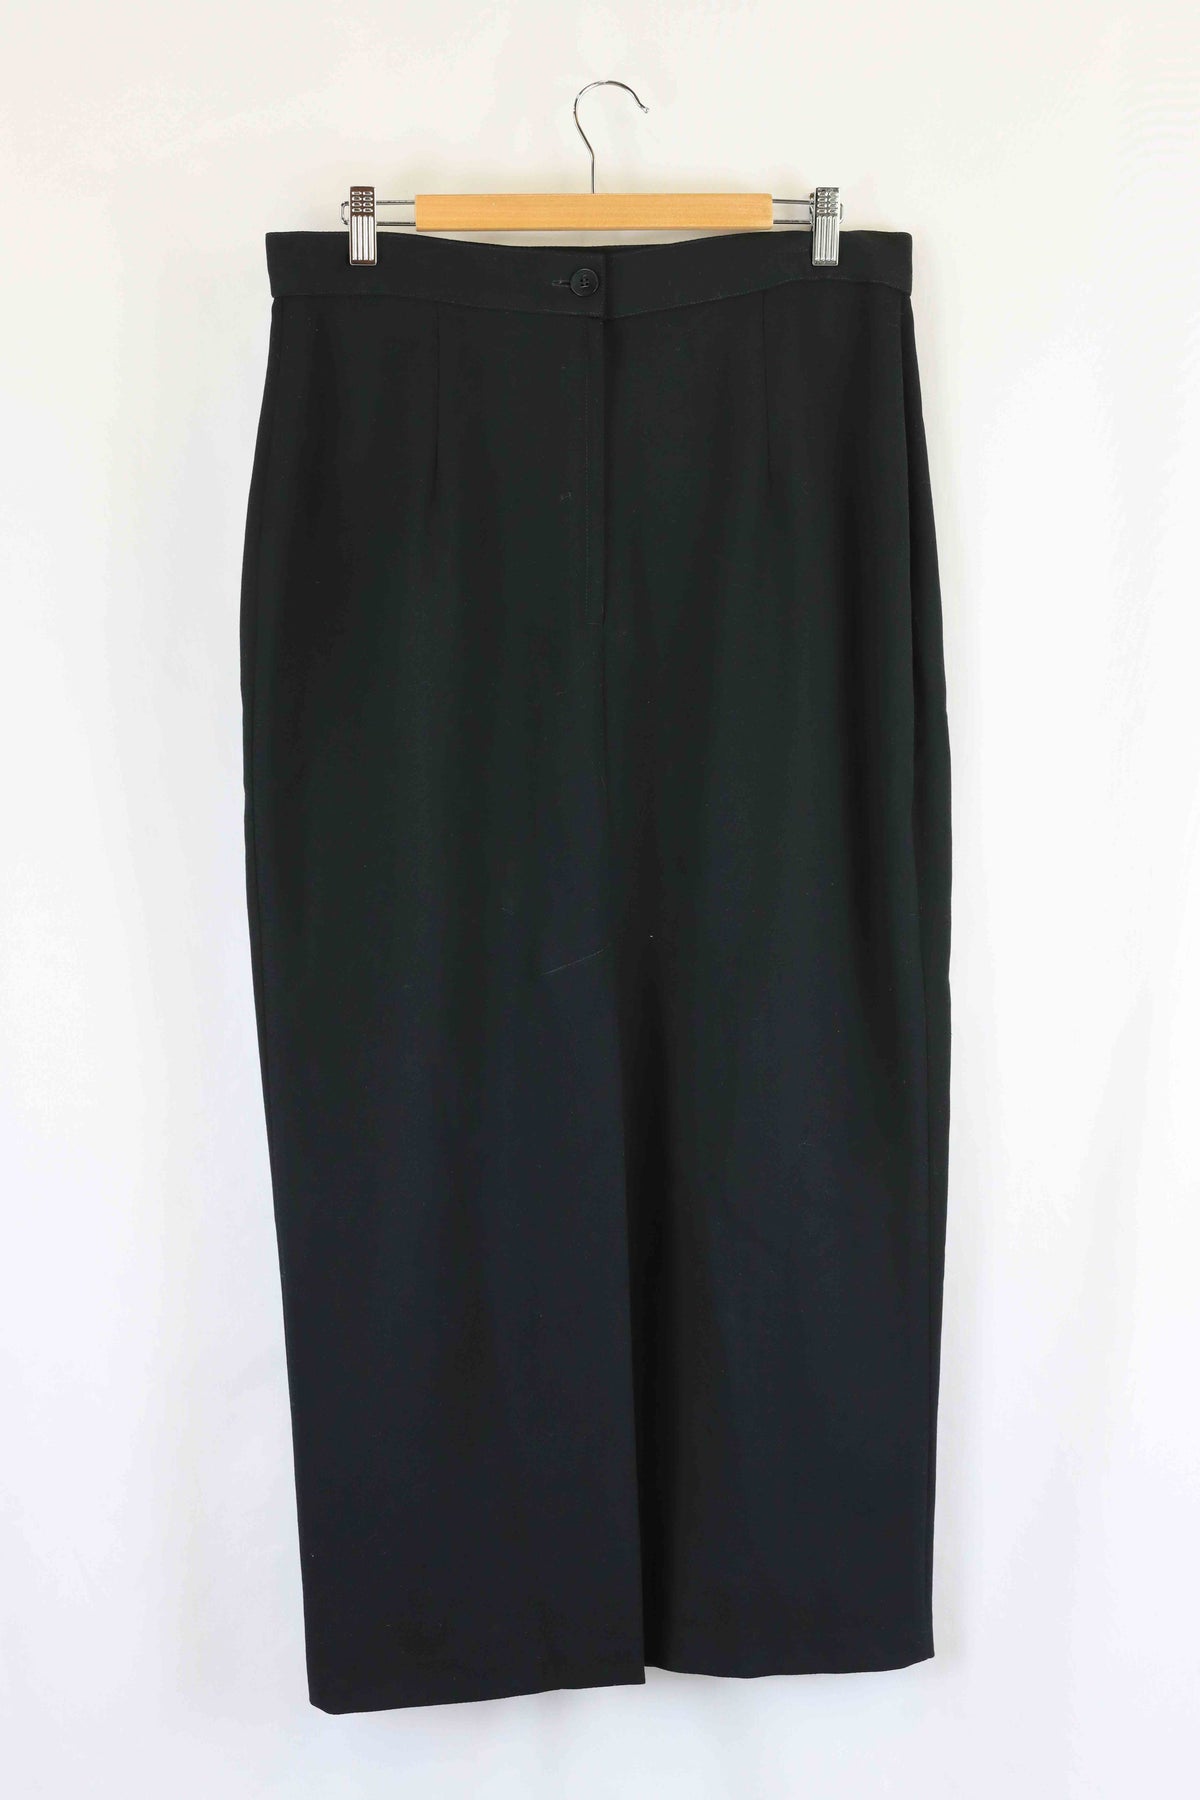 Gay Naffine Vintage Wool Black Skirt 16